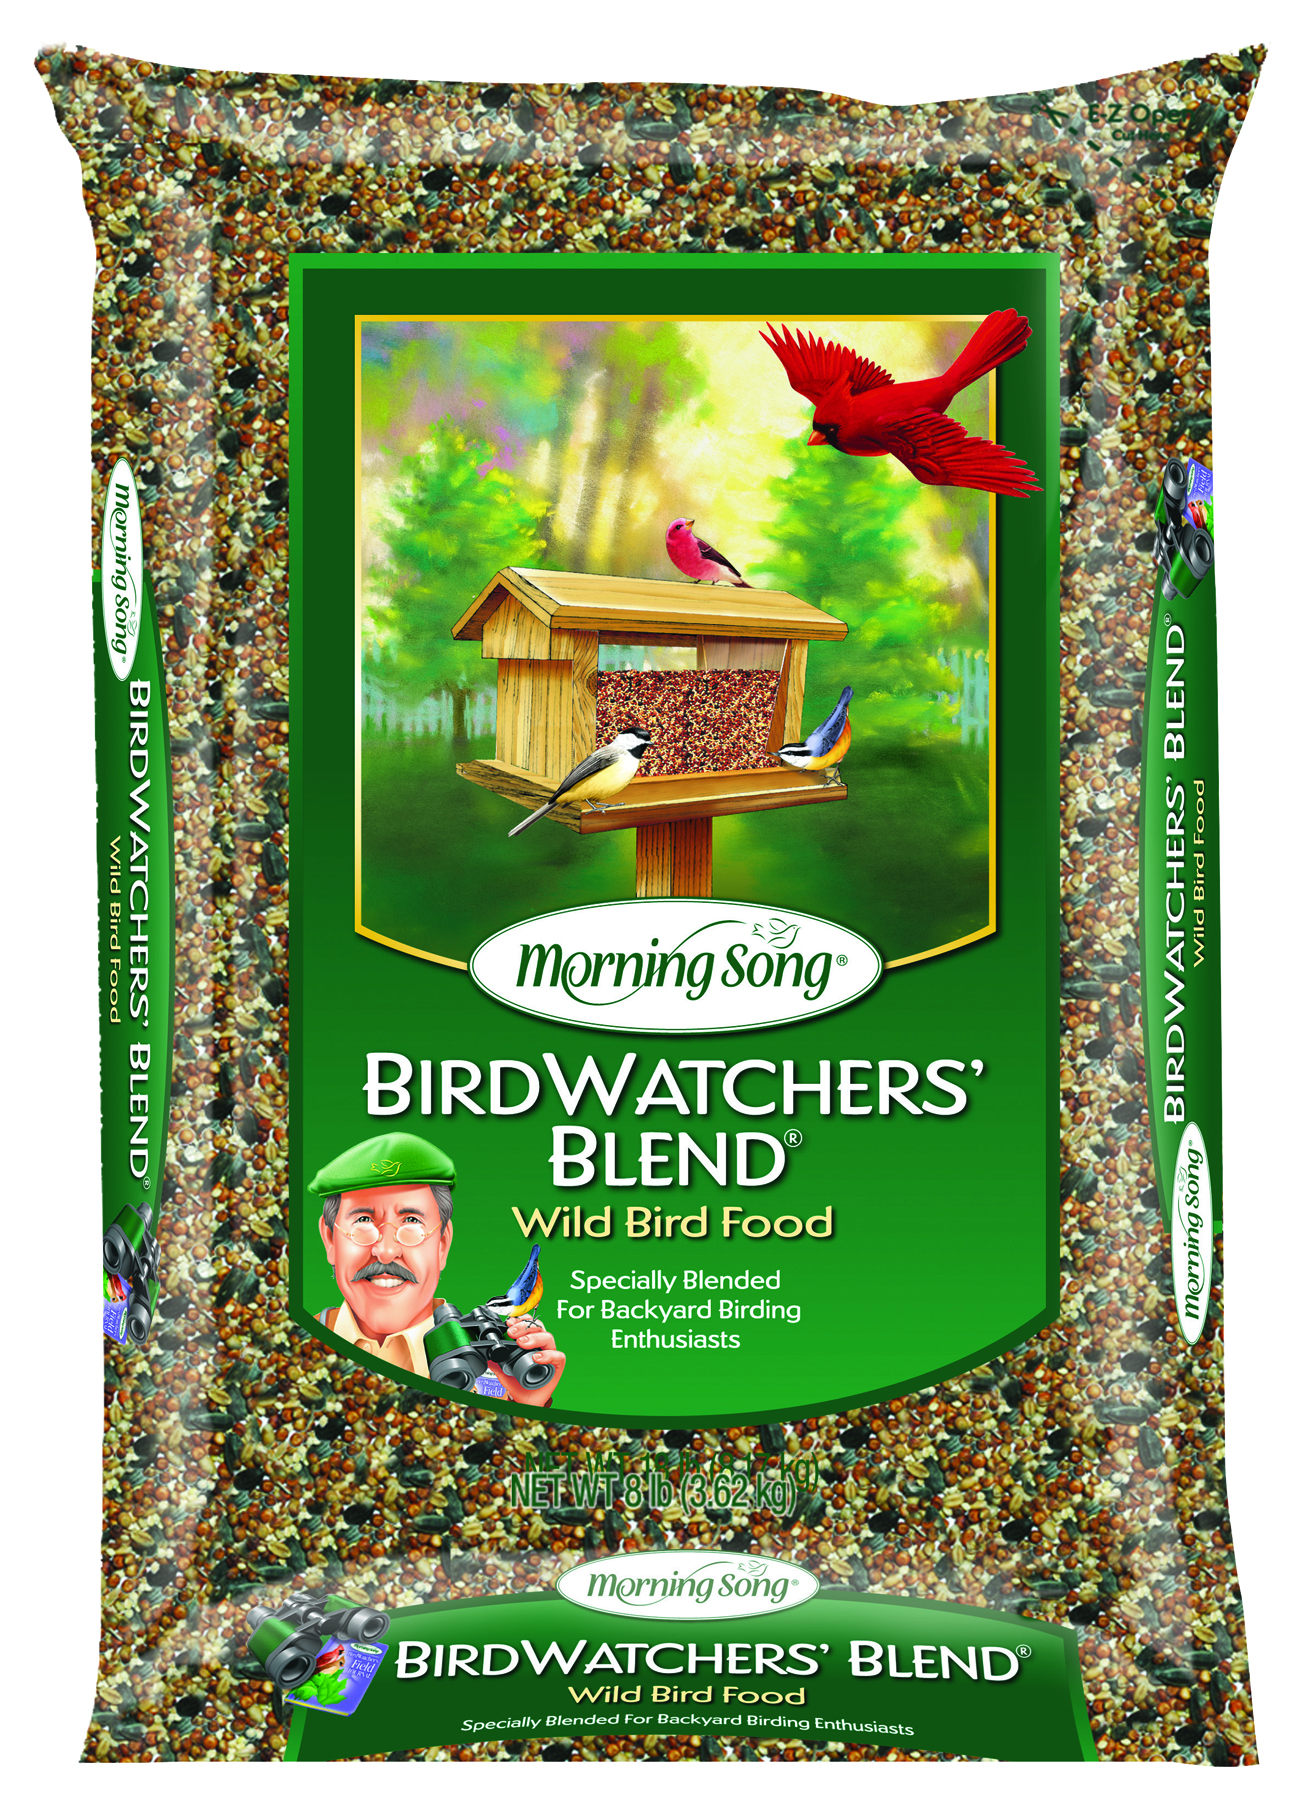 MORNING SONG BIRD WATCHERS BLEND WILD BIRD FOOD